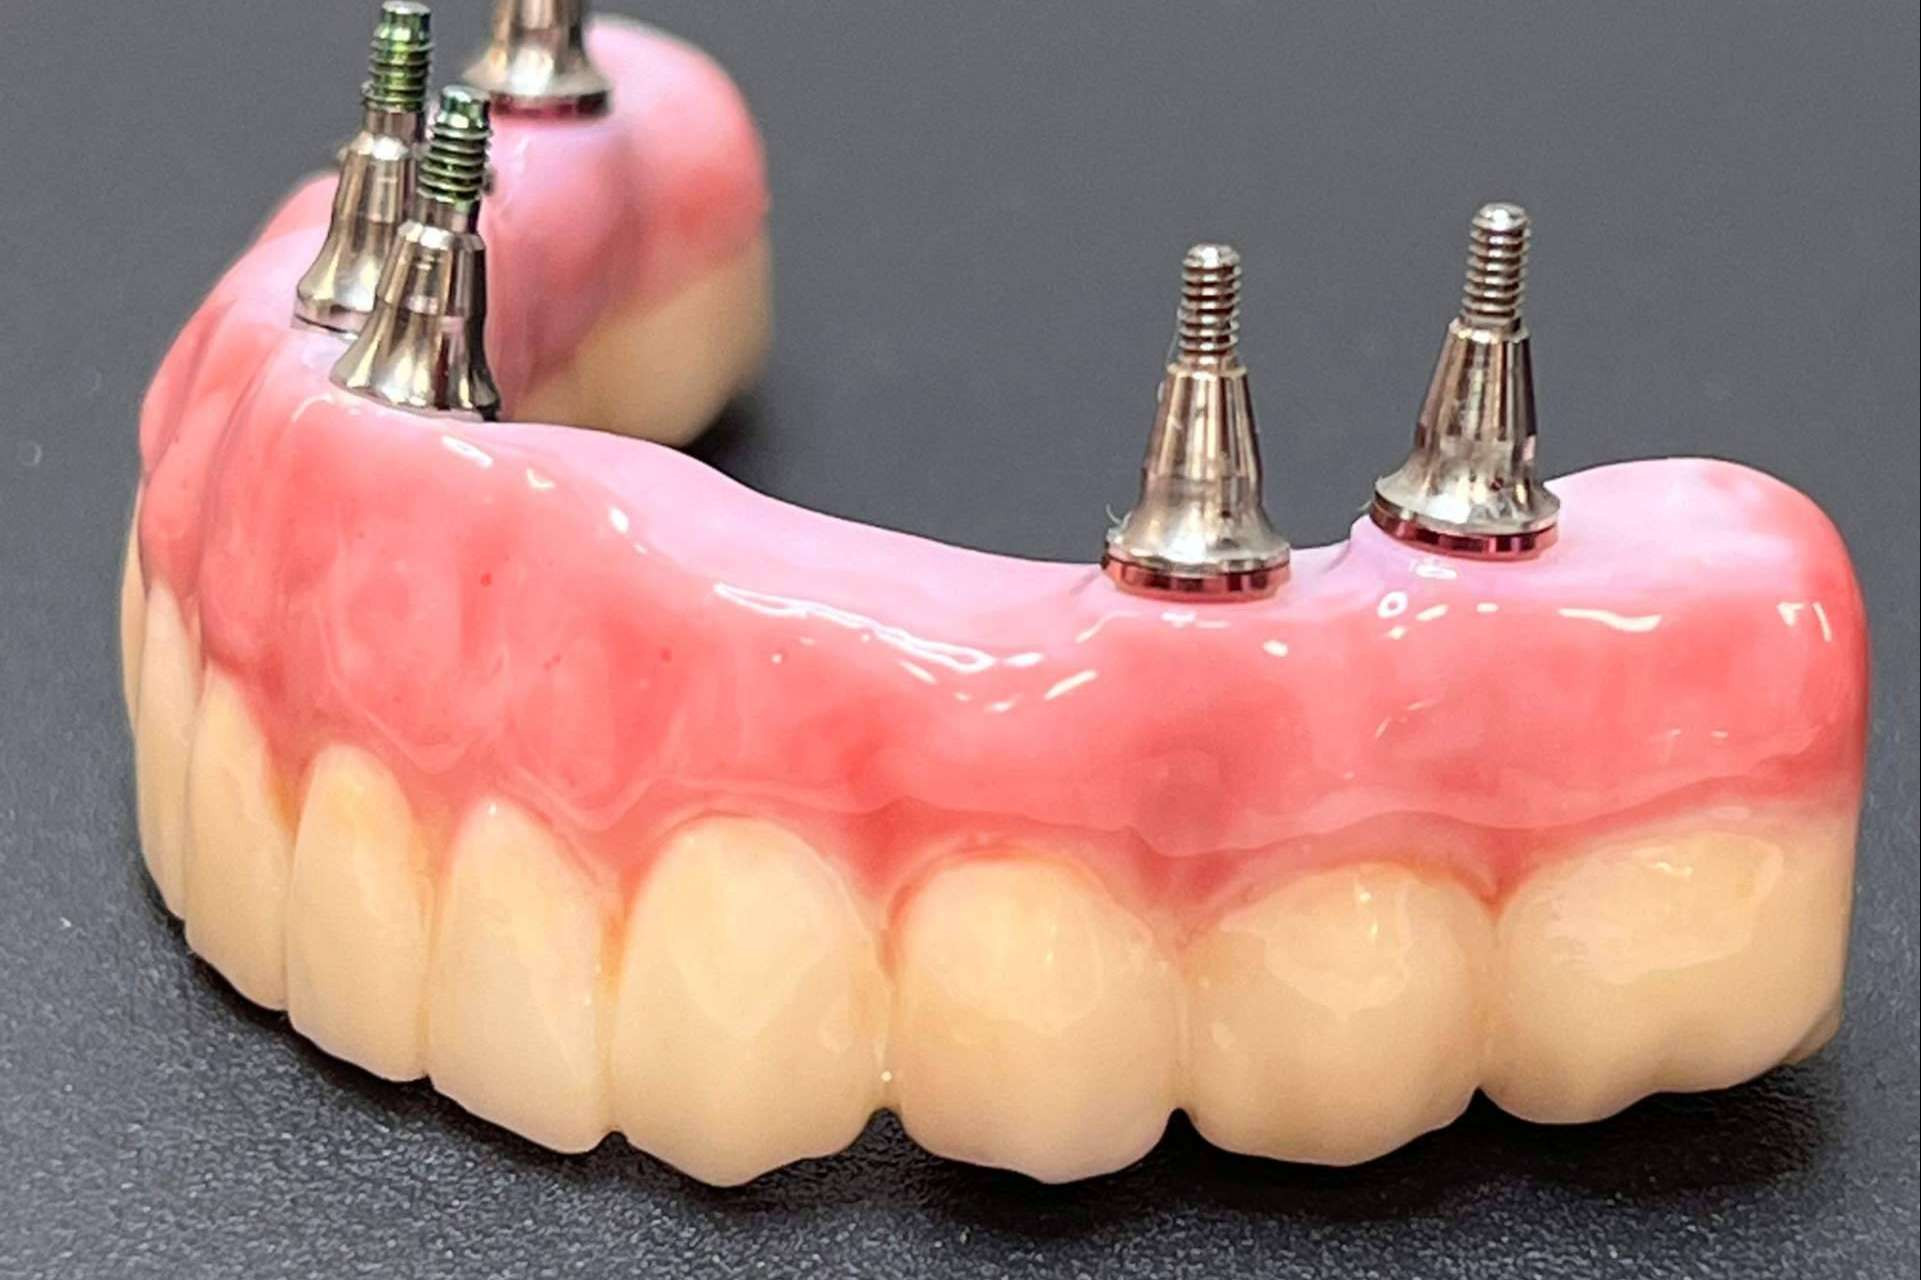  Dentinova cuenta con la tecnología y el equipo profesional para realizar extracciones e implantes dentales en la misma consulta 